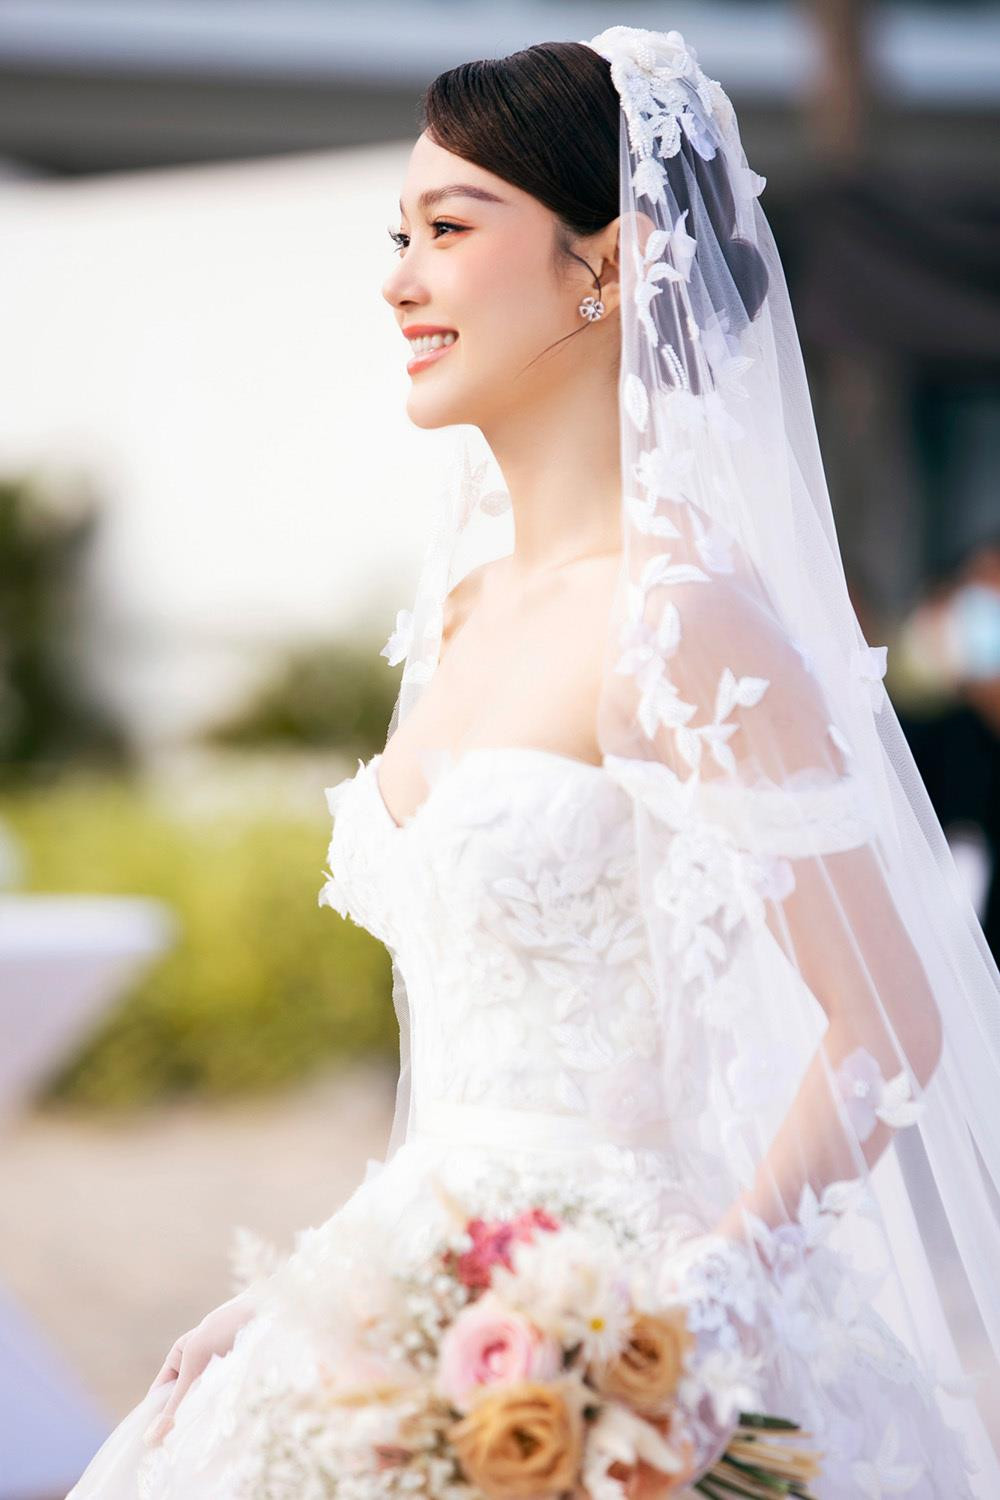 Giá trị 2 bộ váy cưới lộng lẫy Minh Hằng mặc trong hôn lễ - 1